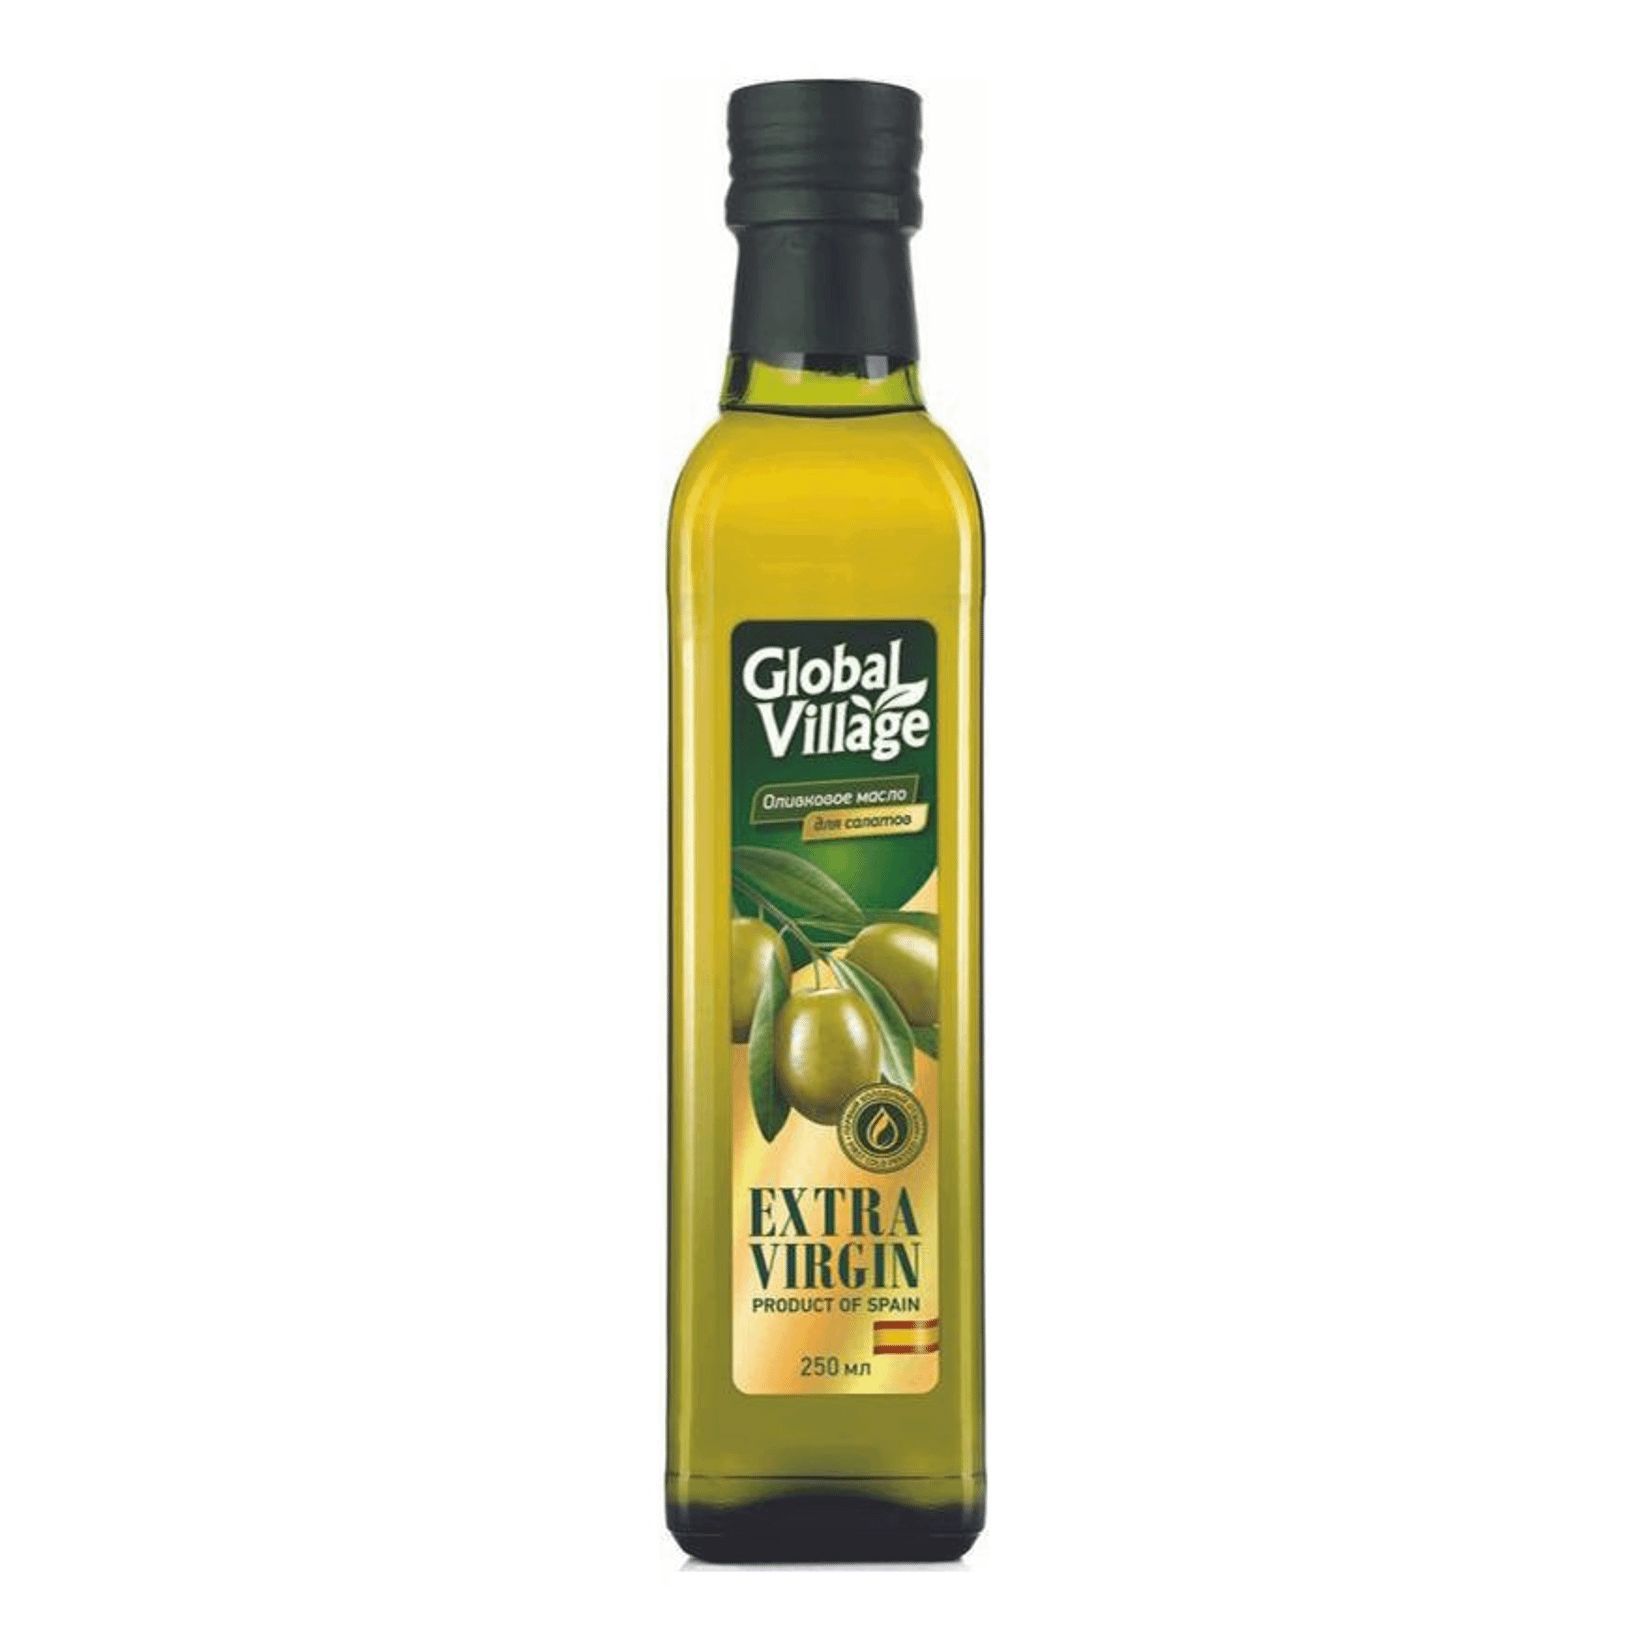 Оливковое масло для салатов нерафинированное. Масло оливковое Global Village 250мл. Масло оливковое Глобал Виладж 250. Оливковое масло Глобал Вилладж Экстра Вирджин. Оливковое масло Экстра Вирджин.